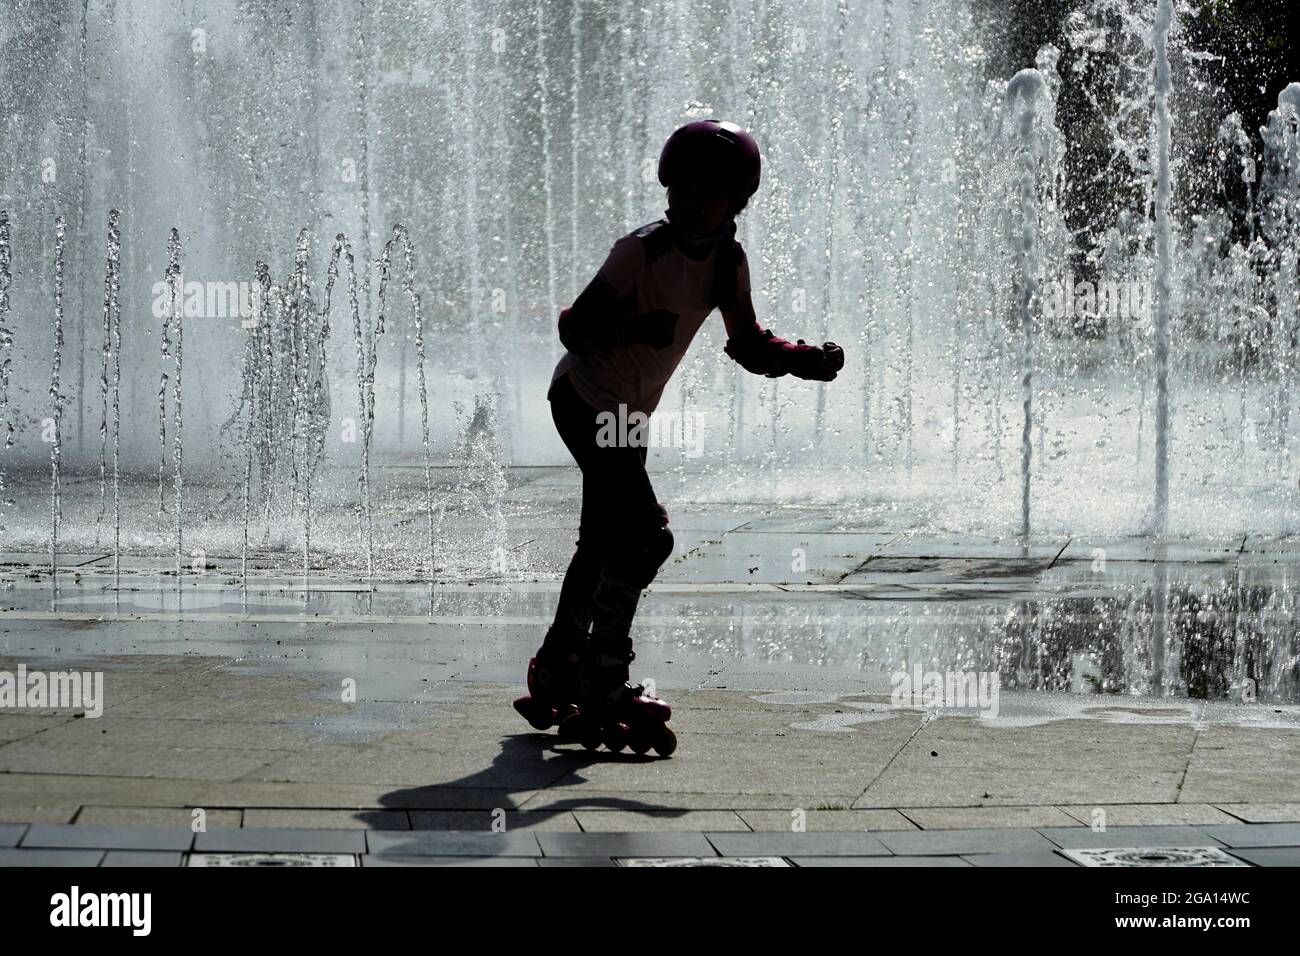 Die Silhouette eines kleinen Mädchens auf dem Rollschuhlaufen kühlt sich im Park unter Wassersprinklern ab, die aufgestellt wurden, um die drückende Sommerhitze in Istanbul, Türkei, zu schlagen Stockfoto